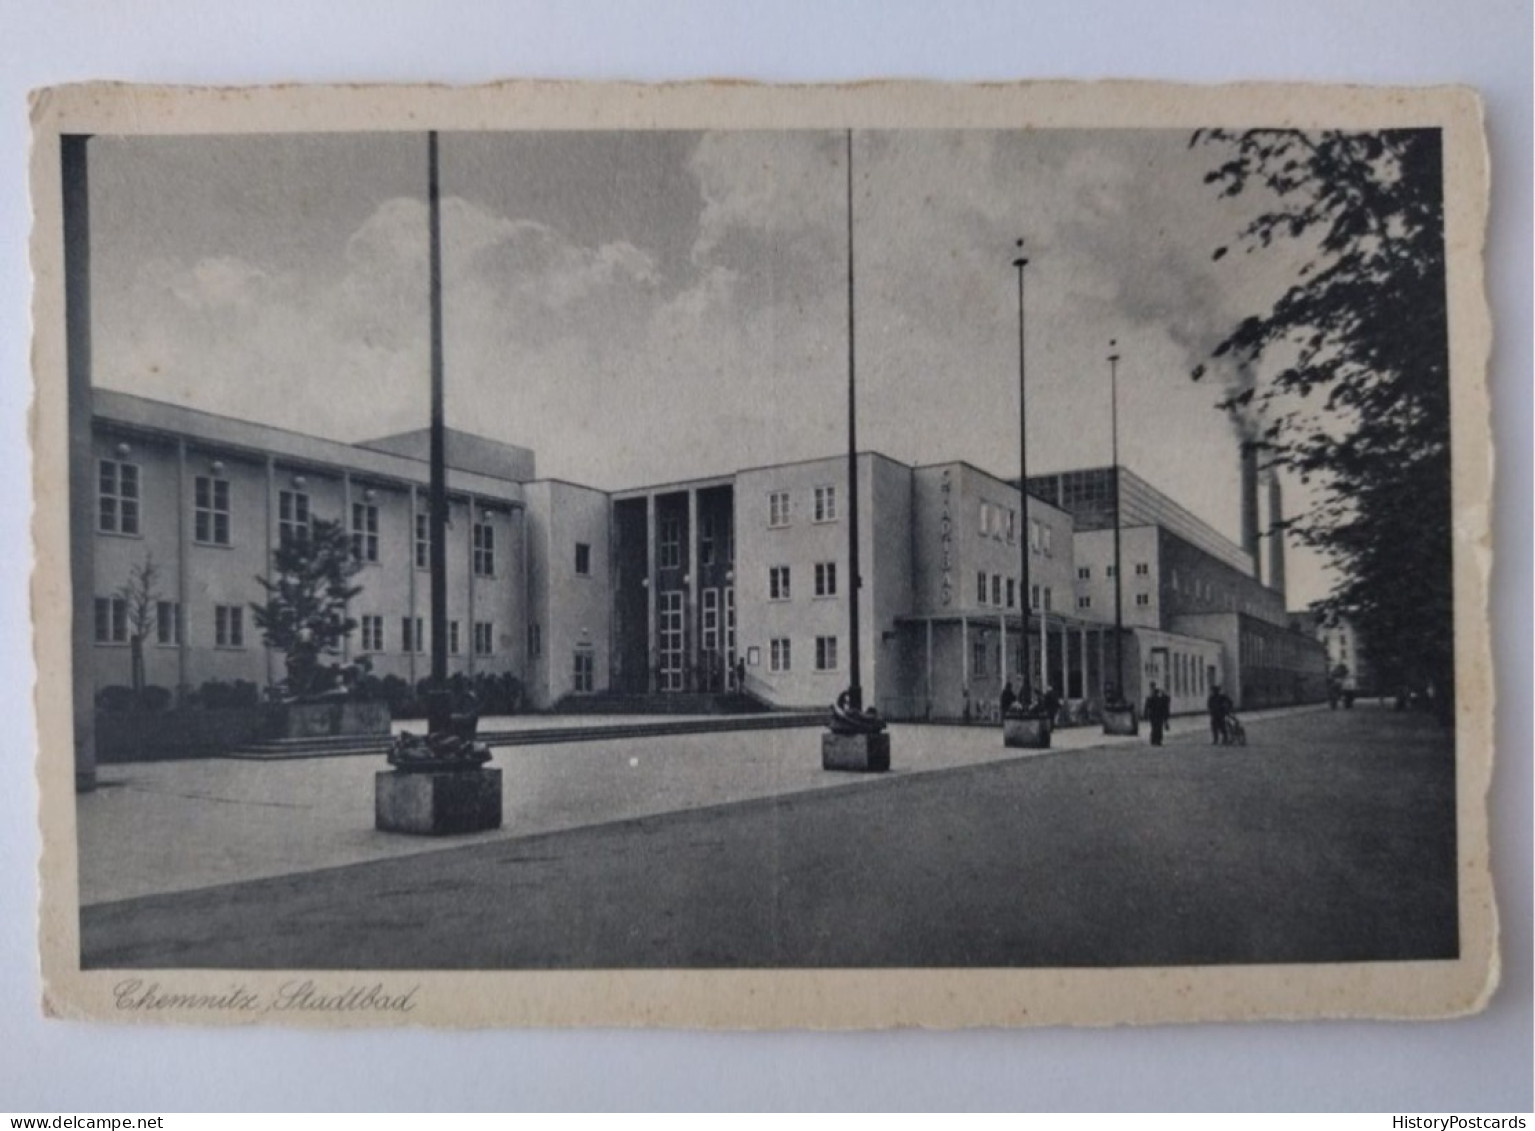 Chemnitz, Stadtbad, 1940 - Chemnitz